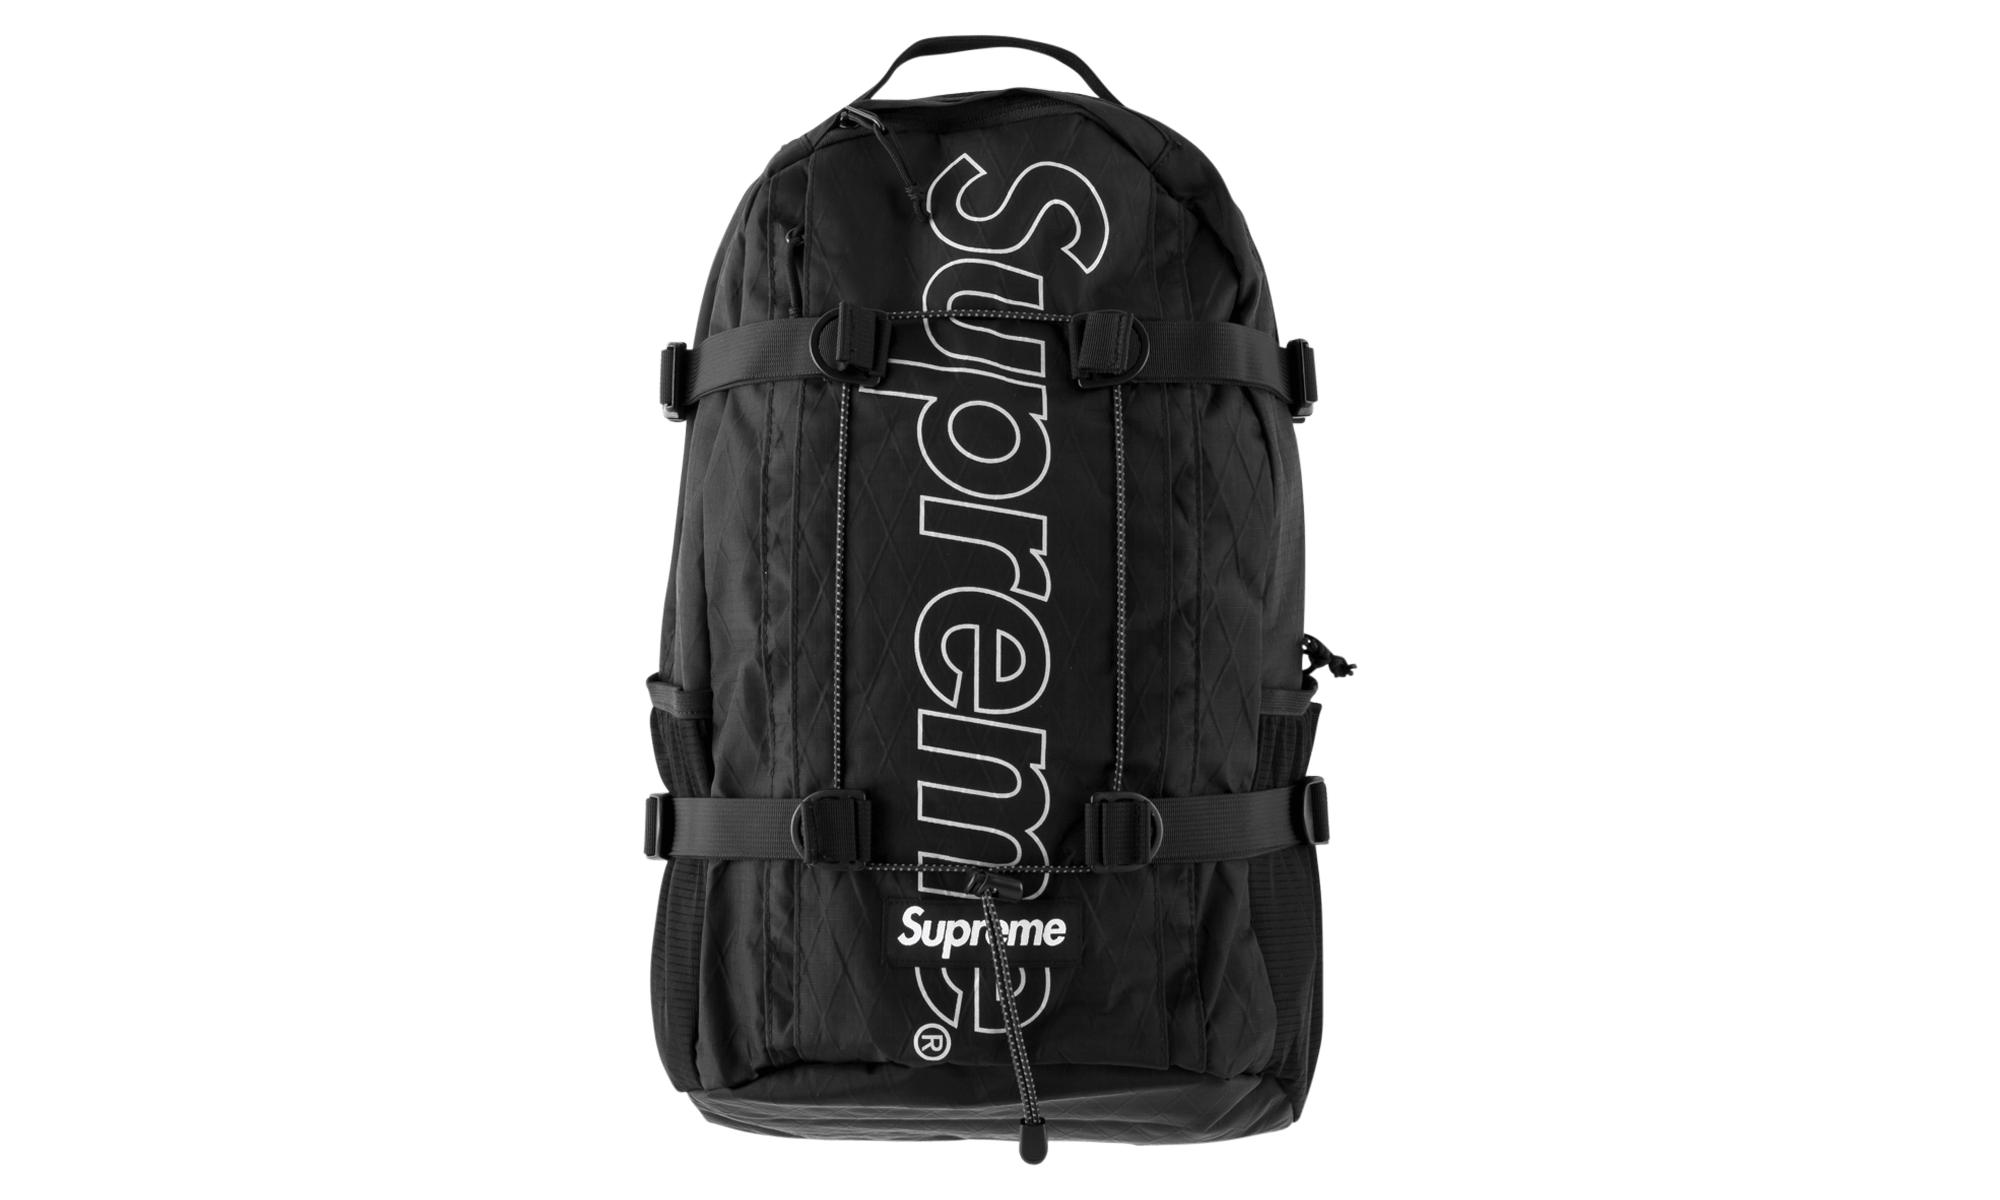 Lyst - Supreme Backpack in Black for Men